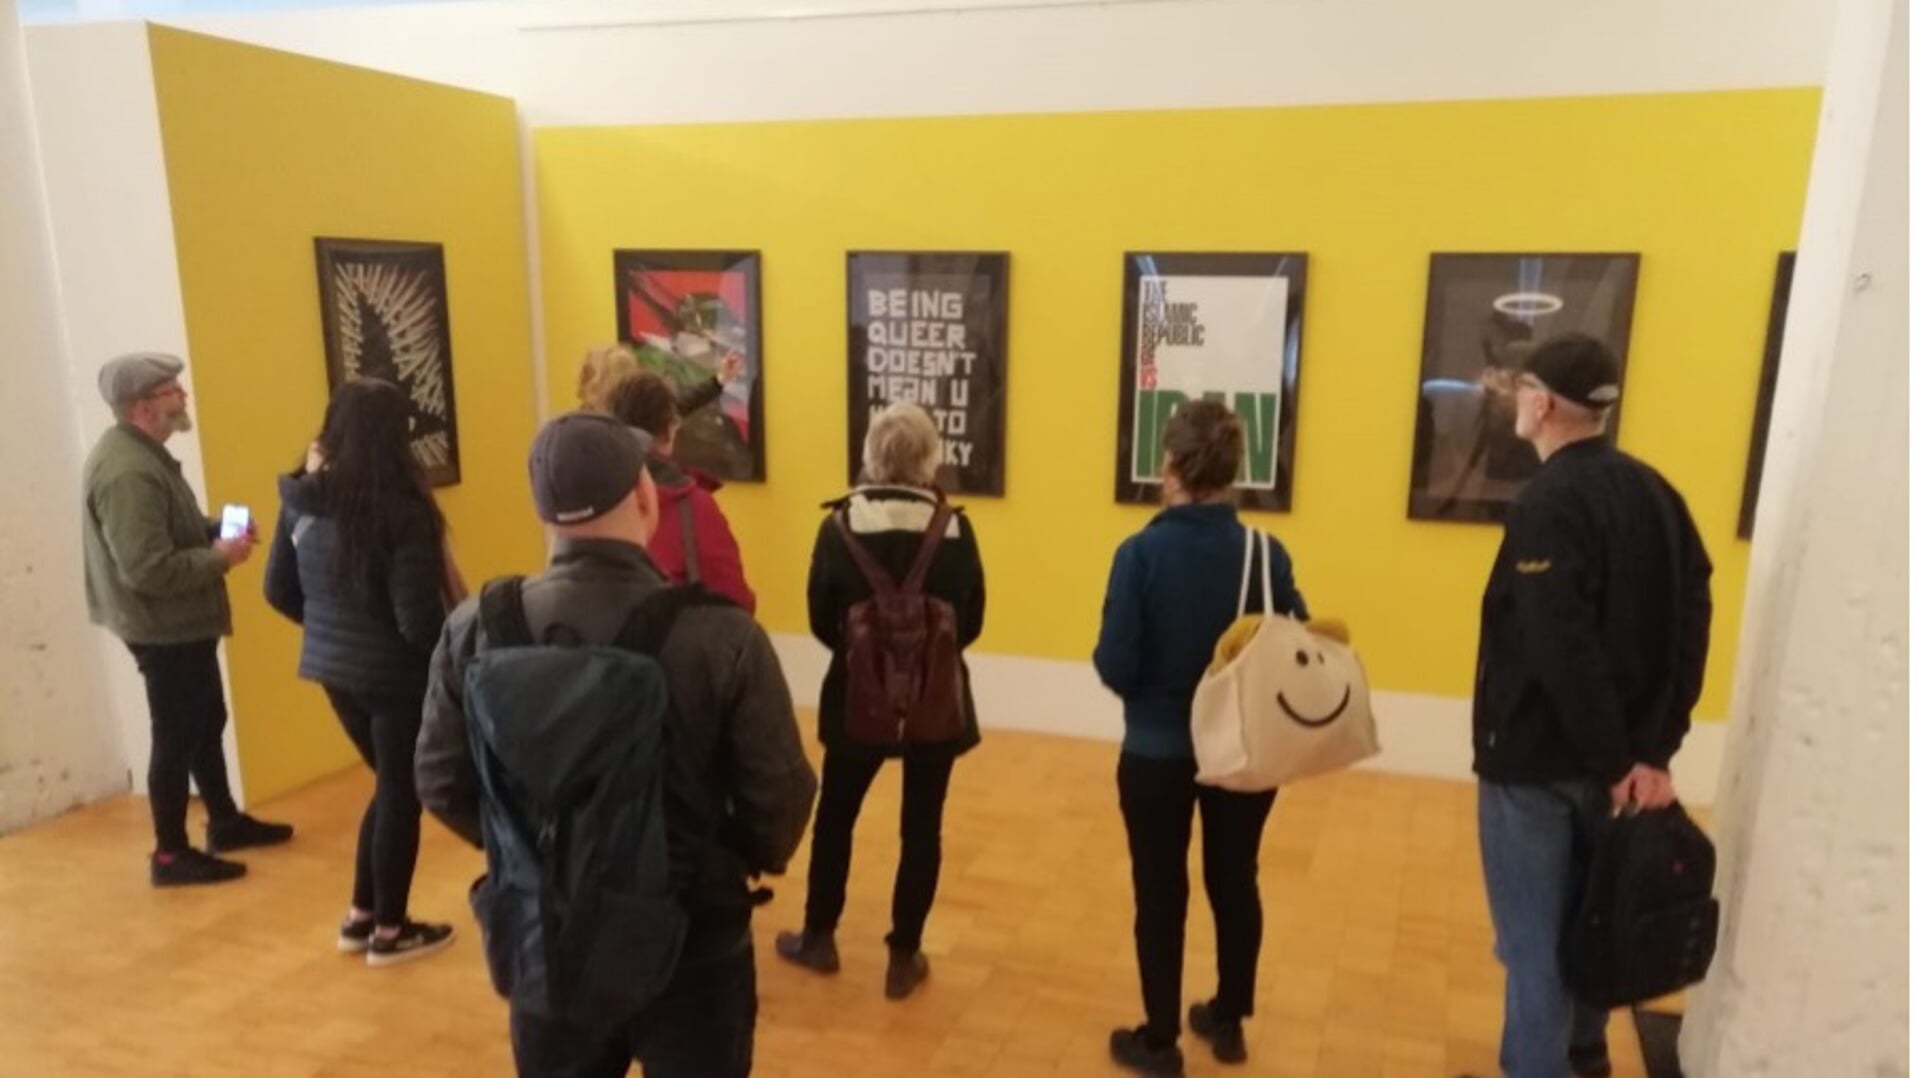 Bezoek aan het Emmerichs postermuseum